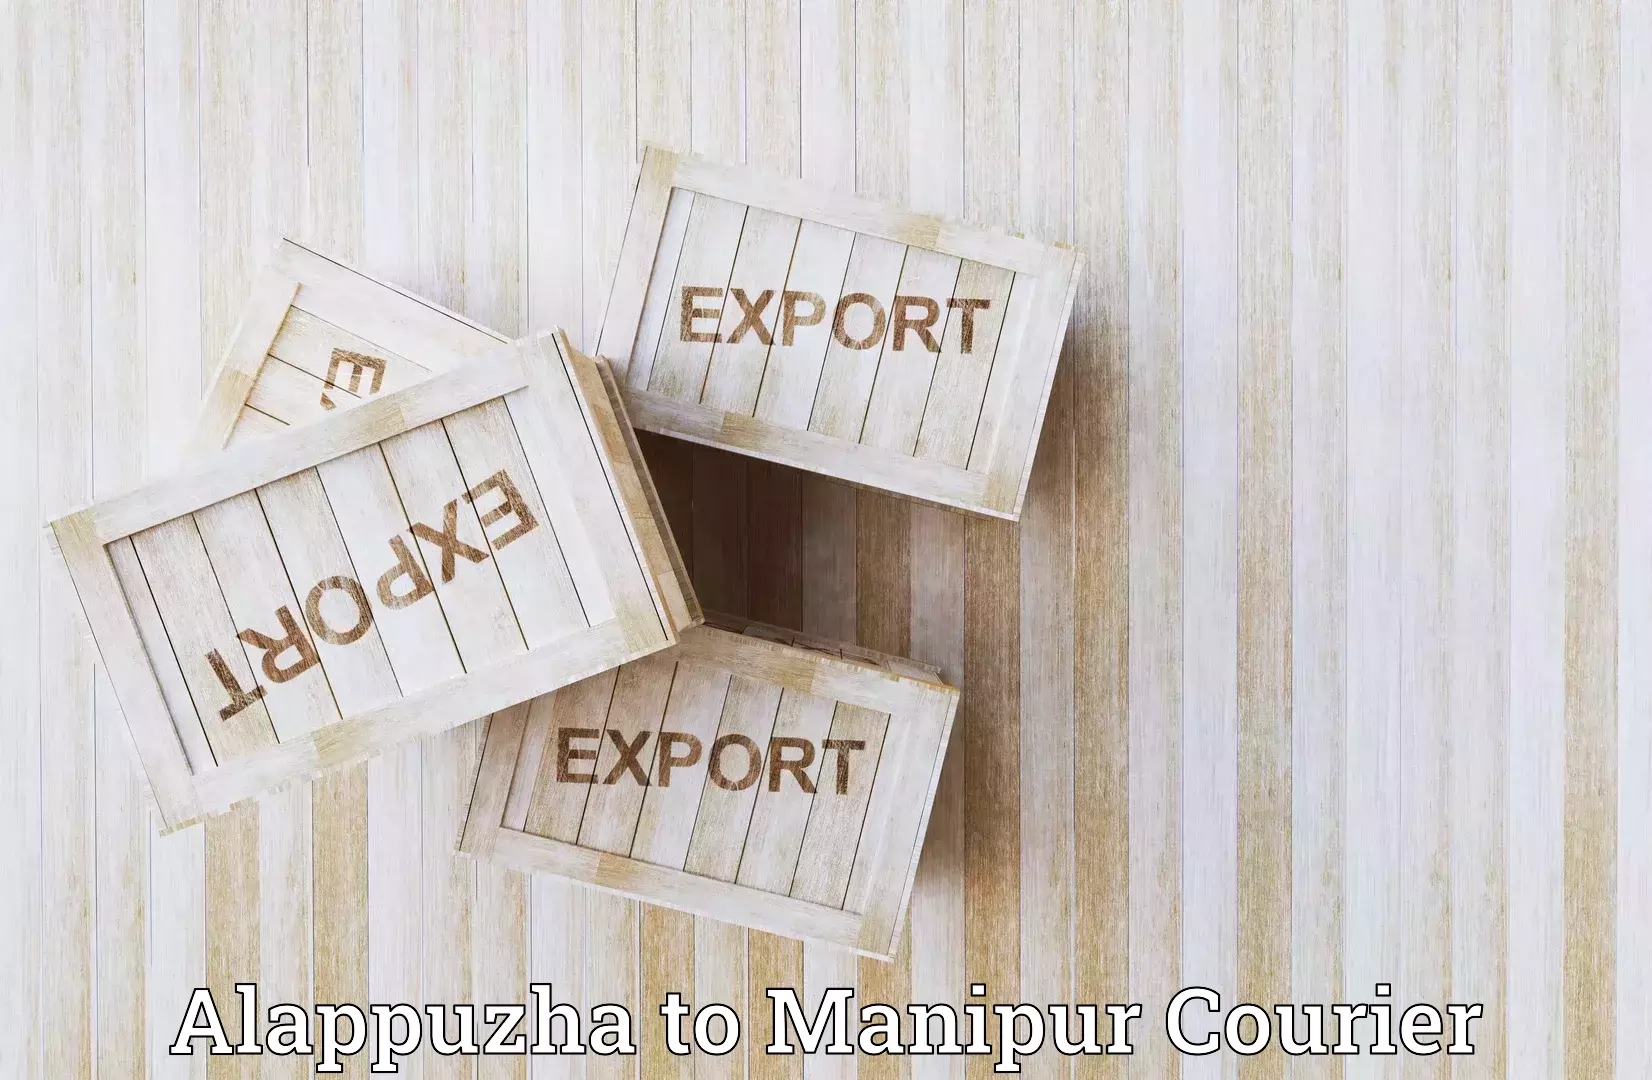 Digital courier platforms Alappuzha to Manipur